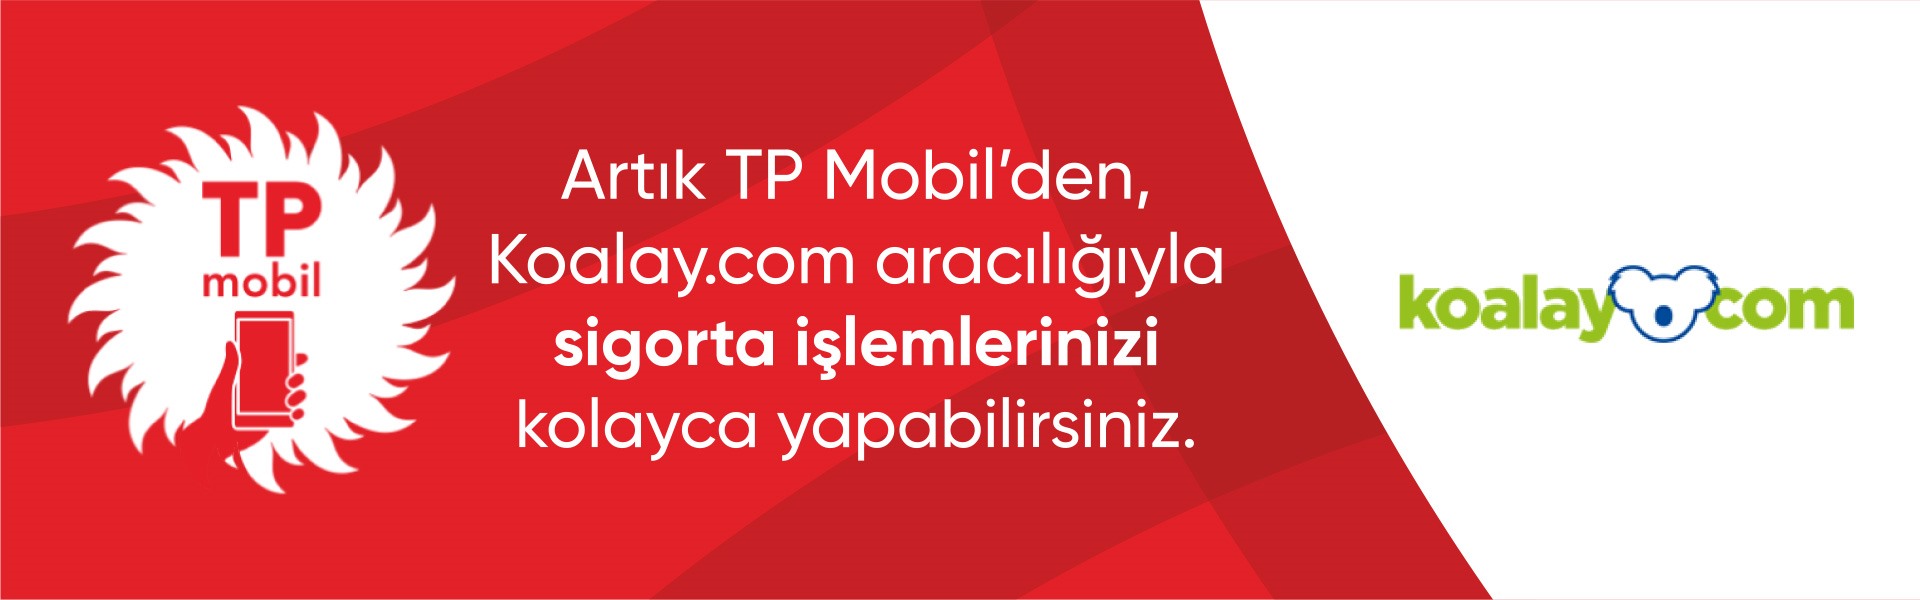 Türkiye Petrolleri ve Koalay.com iş birliği ile sigorta işlemleri TP Mobil üzerinden yapılabiliyor